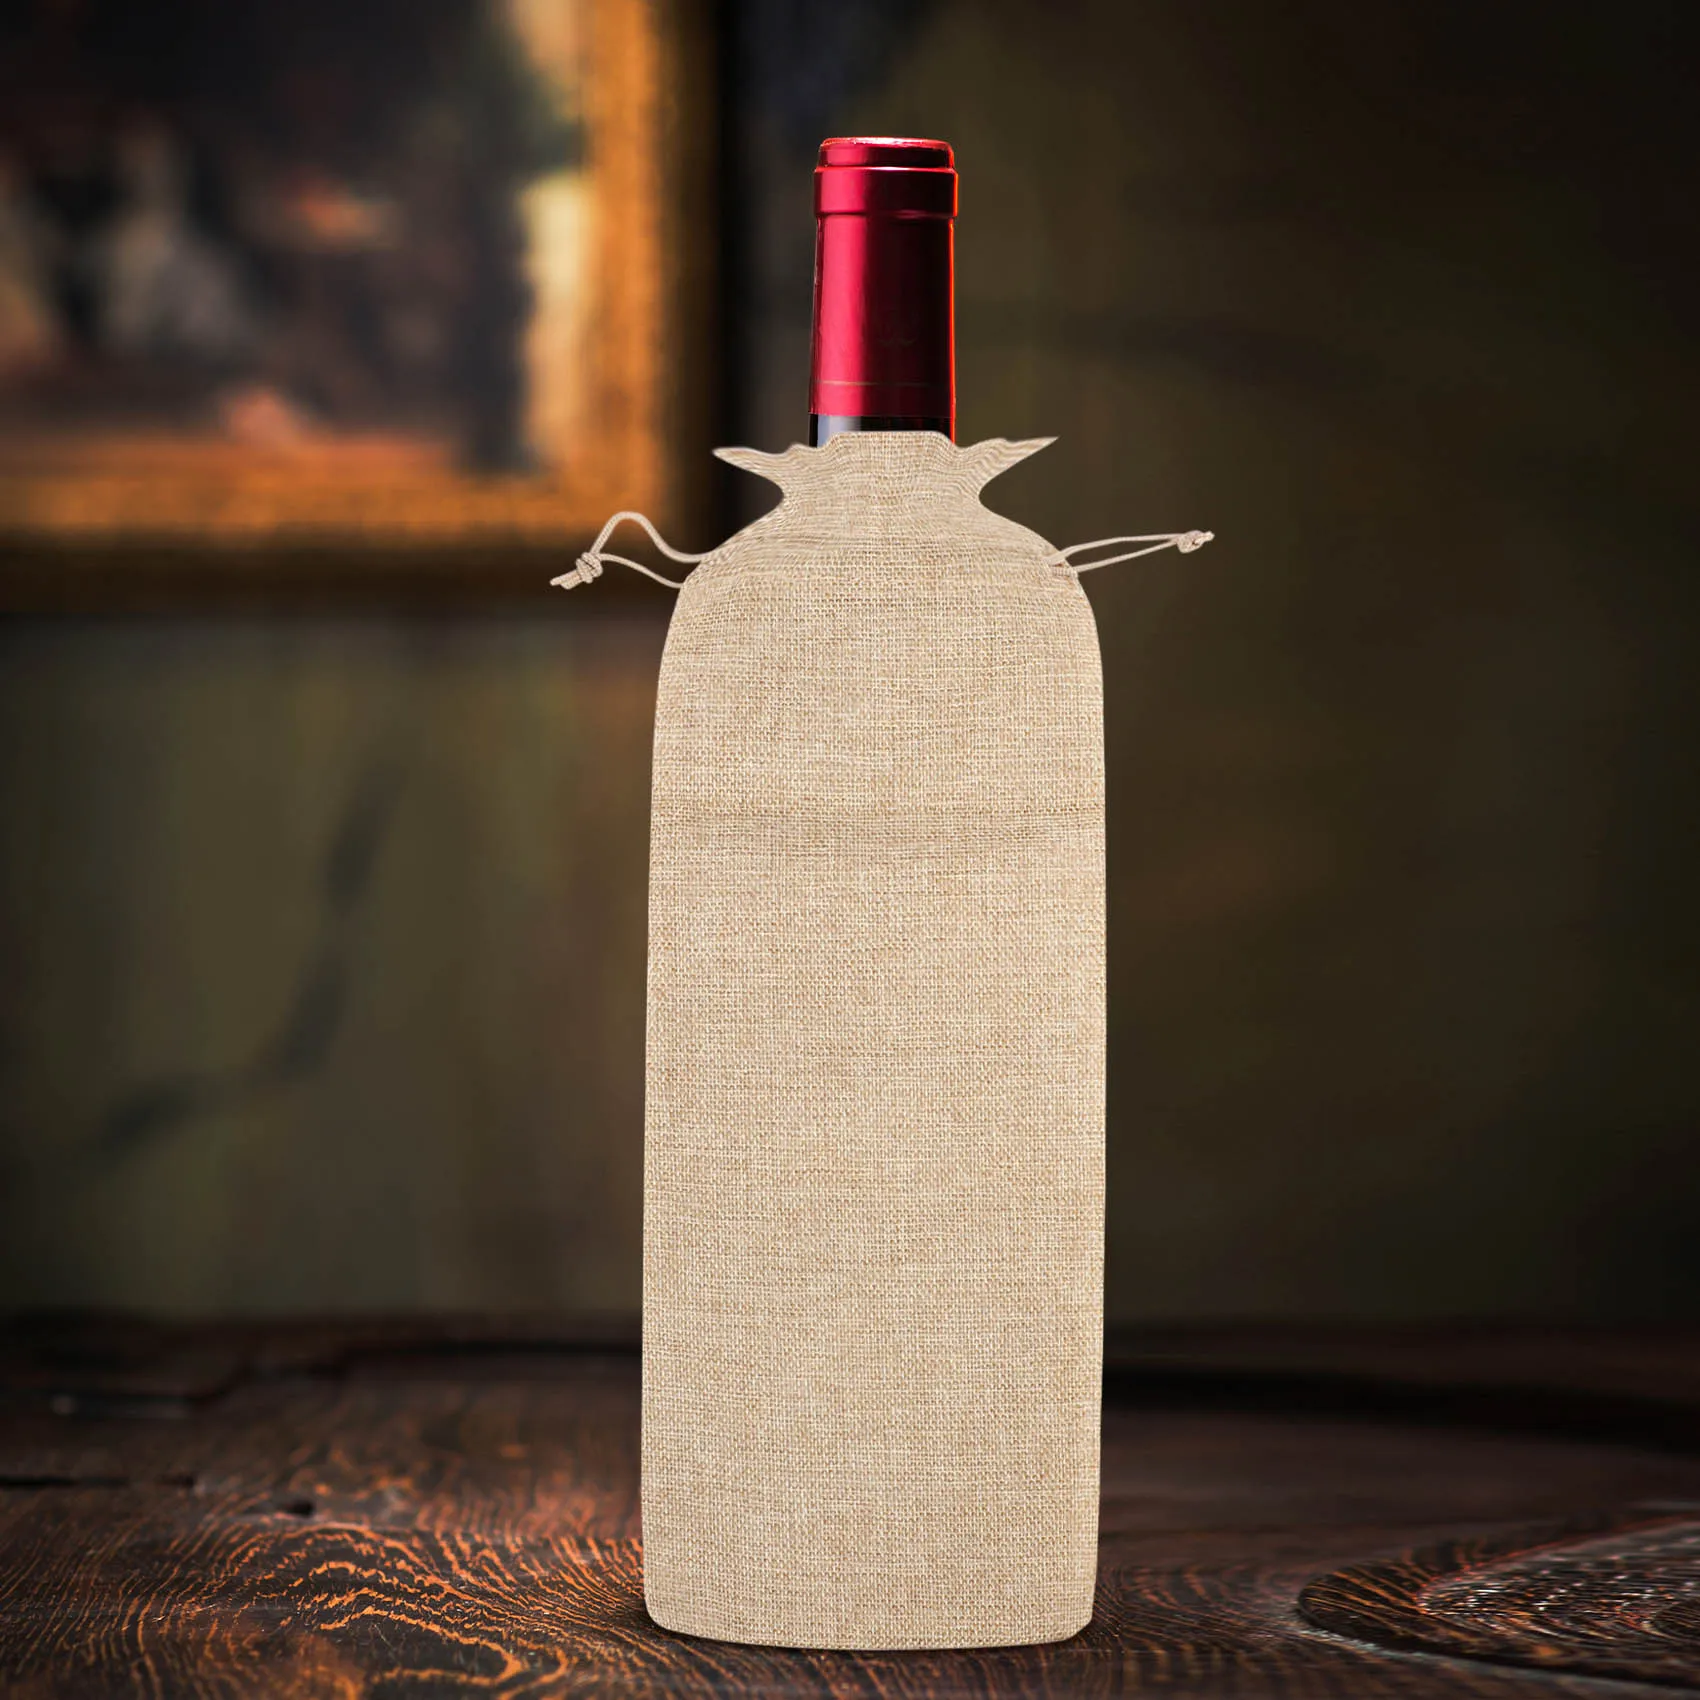 10шт джутовых пакетов для вина, подарочные пакеты для бутылок вина из мешковины размером 14 x 6 1/4 дюйма с завязками